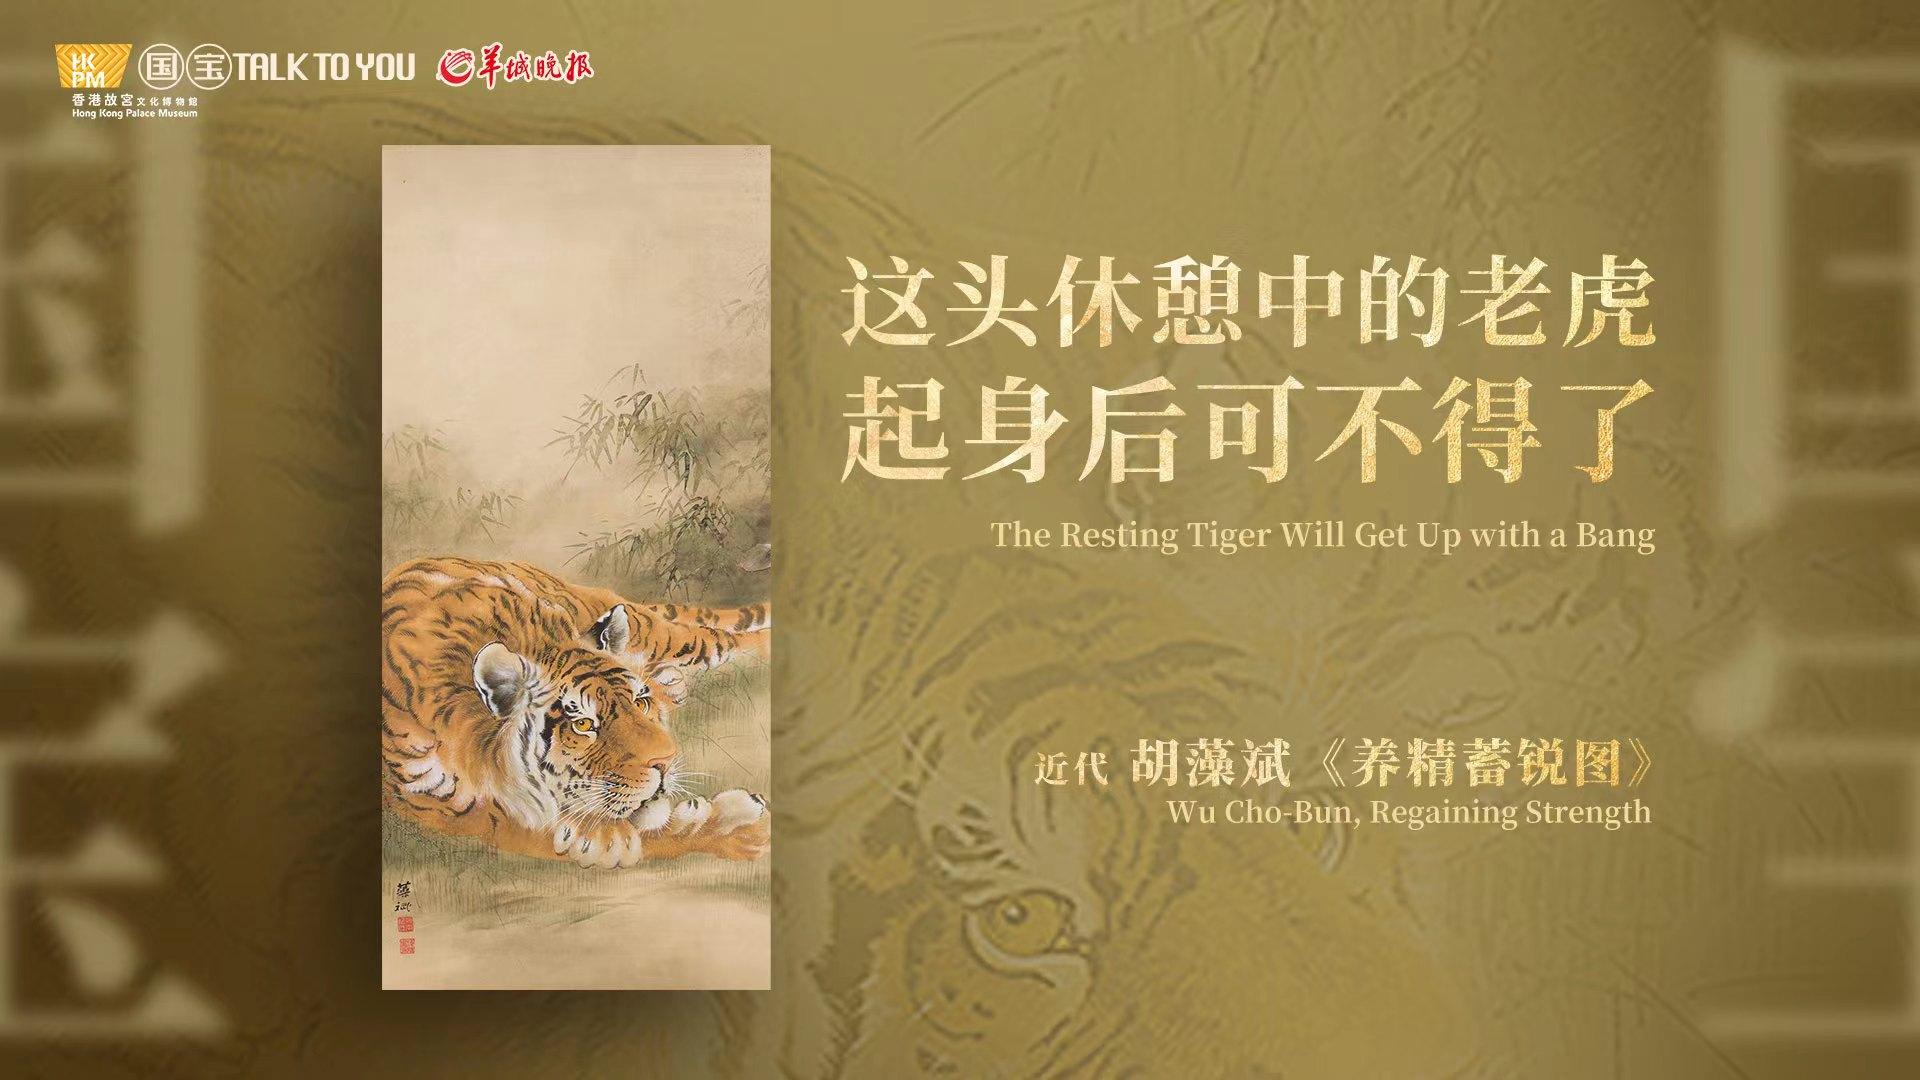 【视频】这头休憩中的老虎，起身后可不得了｜香港回归26周年特别策划·香港故宫·国宝Talk To You⑦